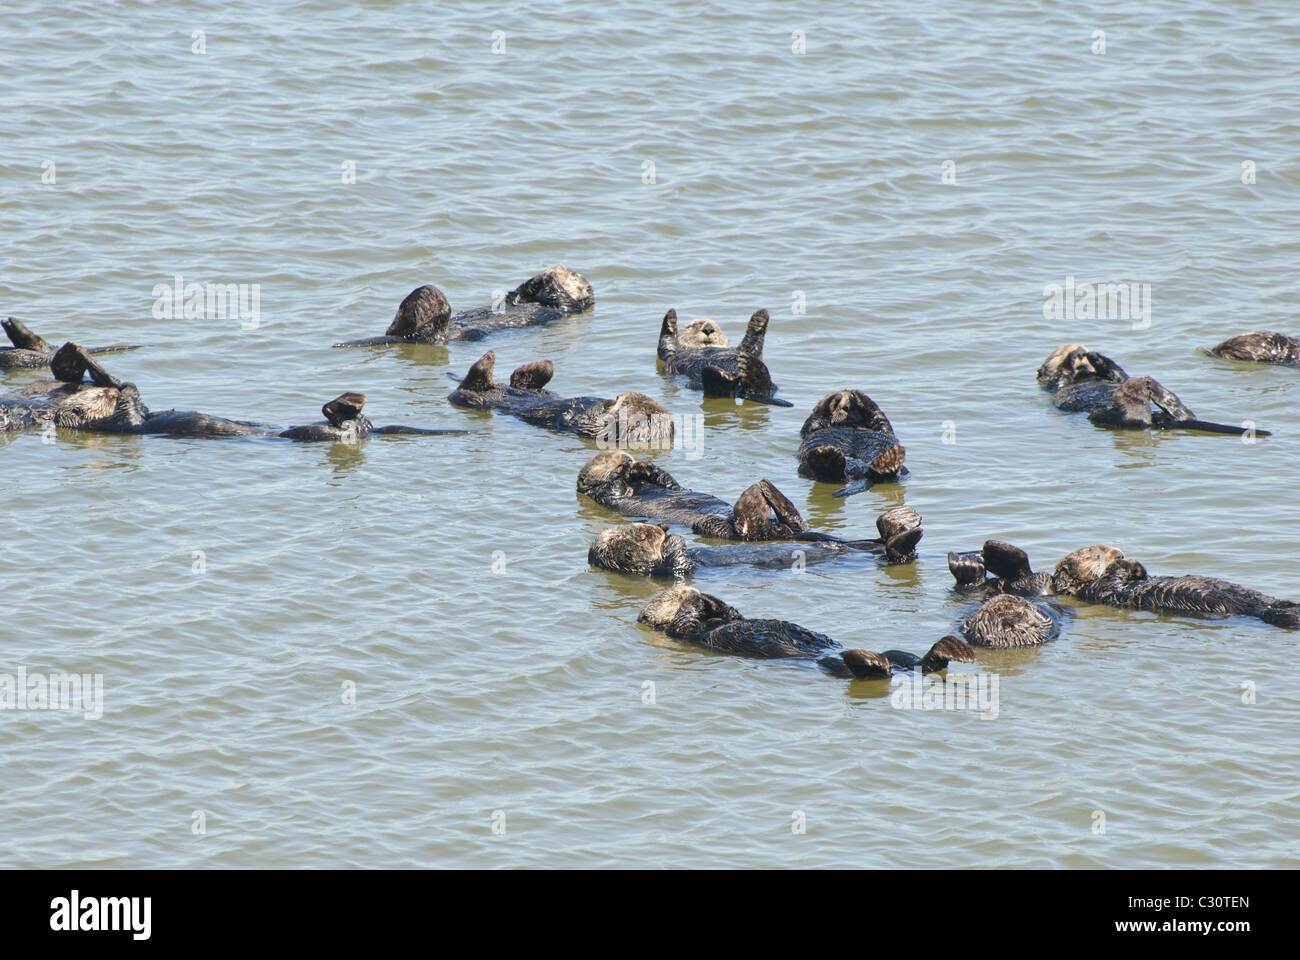 Eine große Gruppe von Seeotter (Enhydra Lutris) befindet sich in der Elkhorn Slough Moss Landing, California. Stockfoto